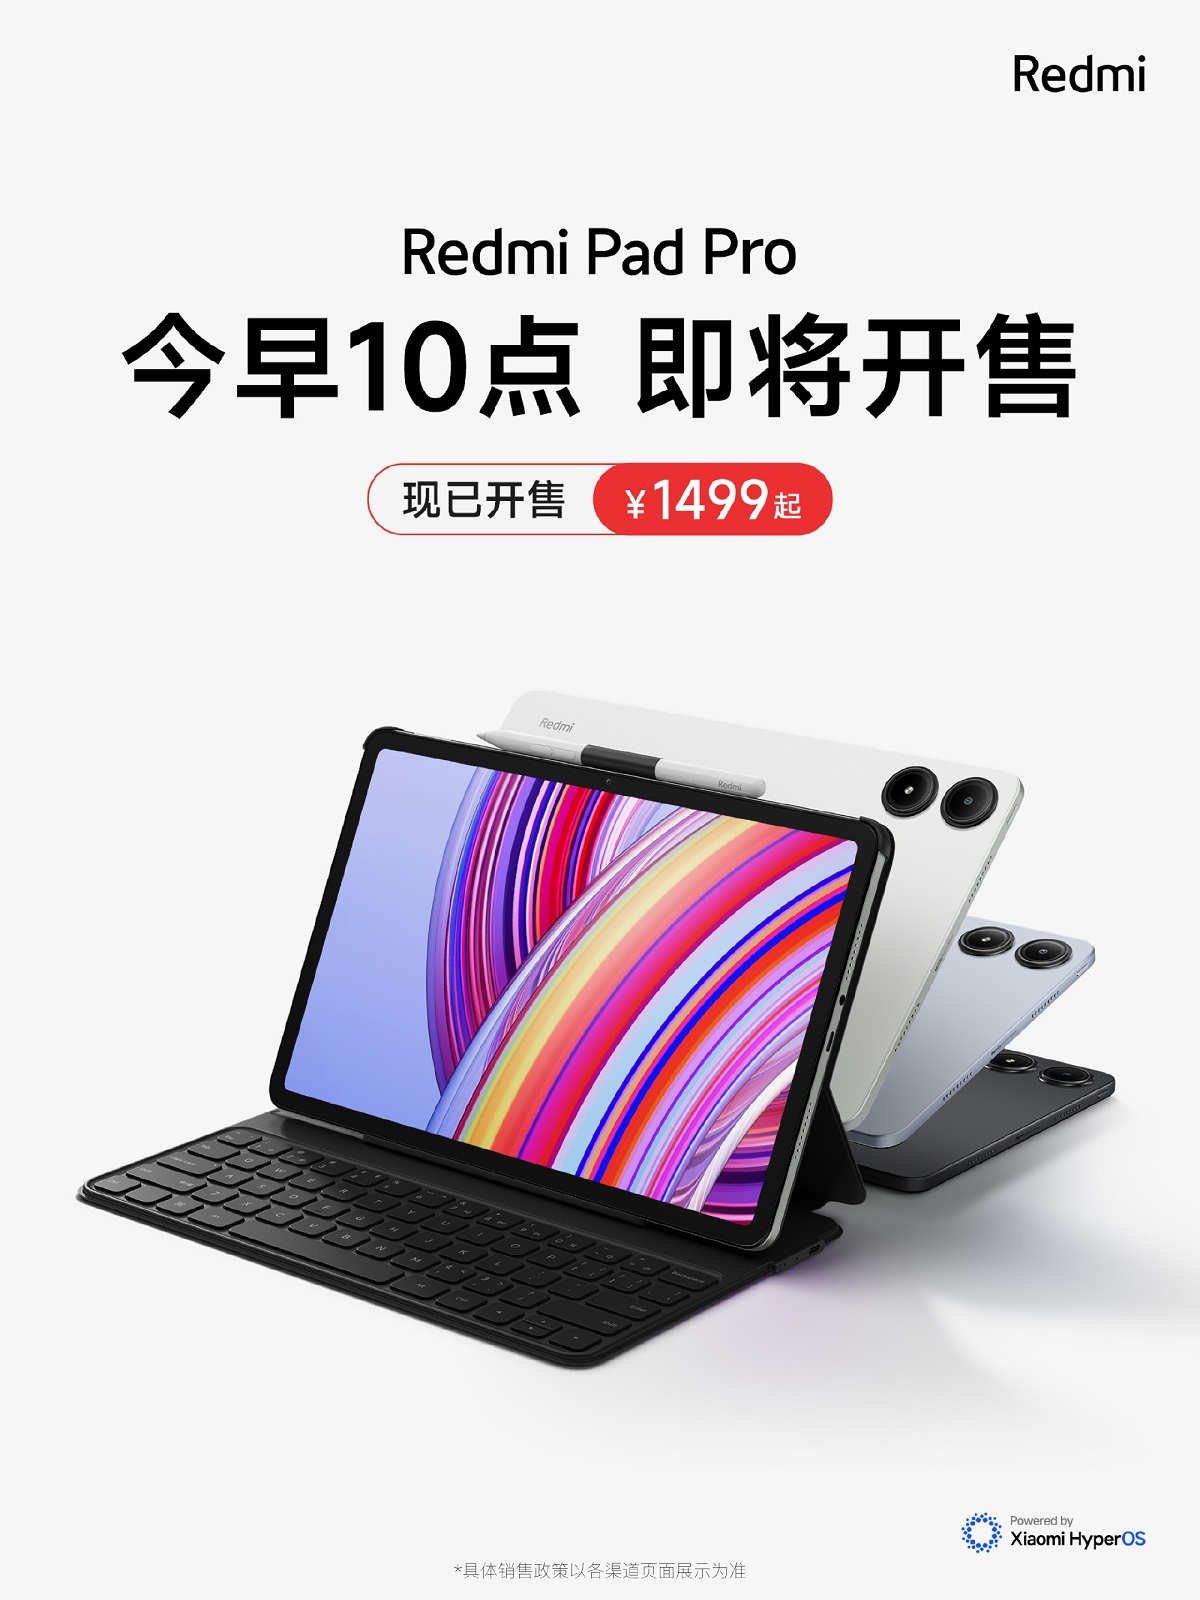 планшет Redmi Pad Pro